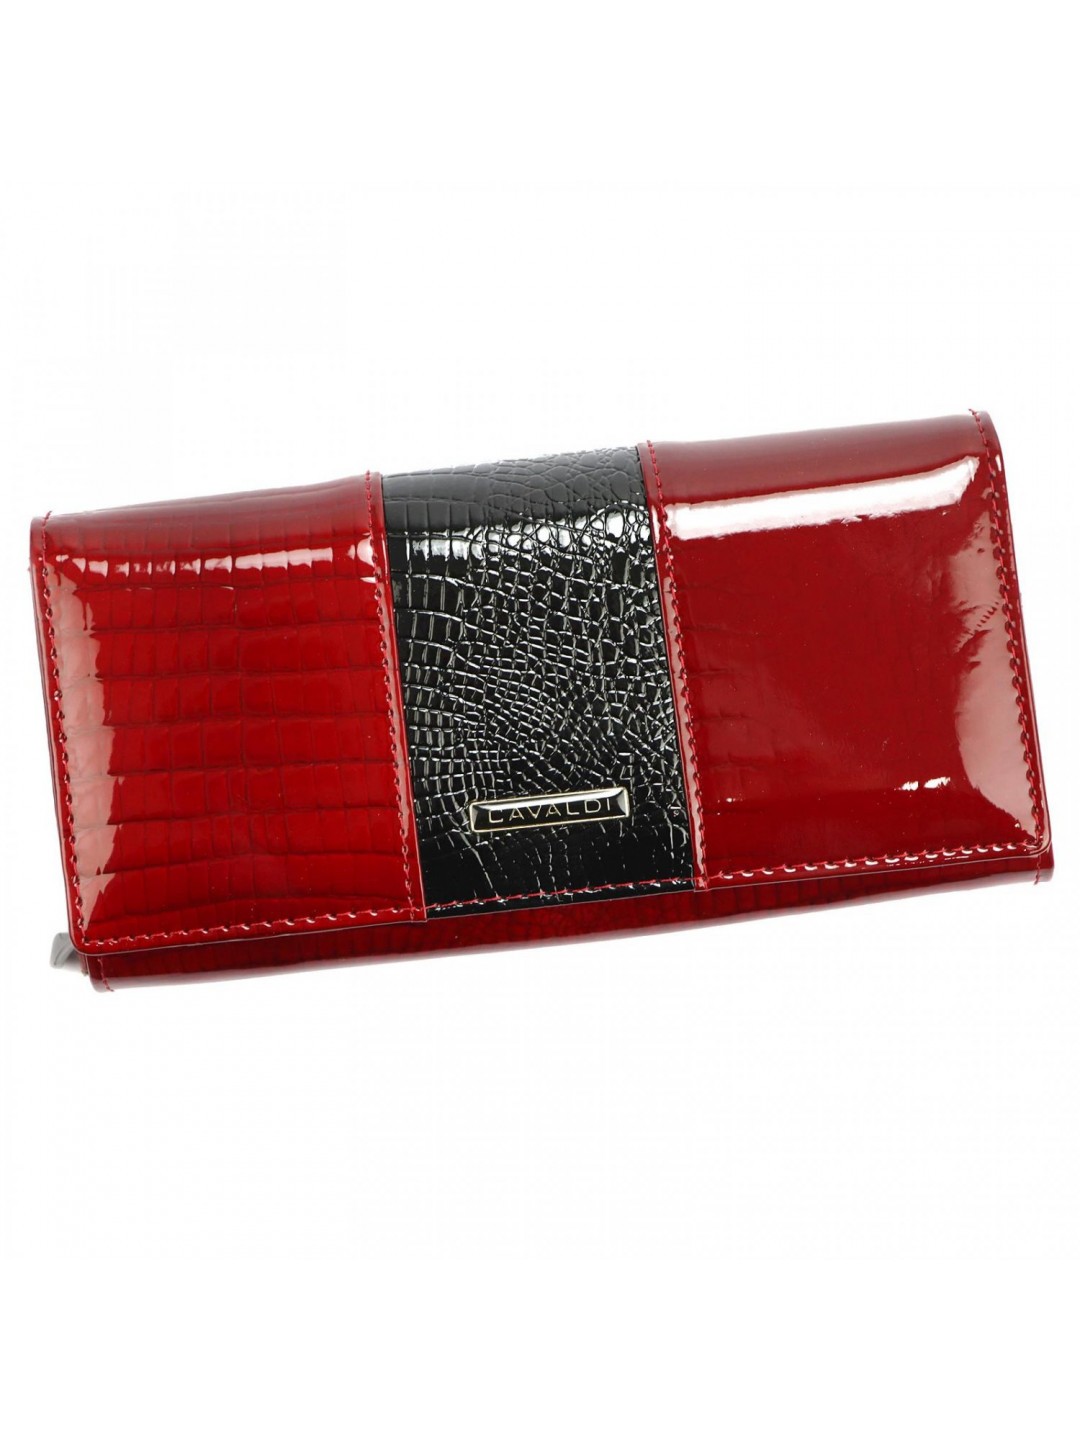 Dámská kožená peněženka červeno černá – Cavaldi Fluorenca